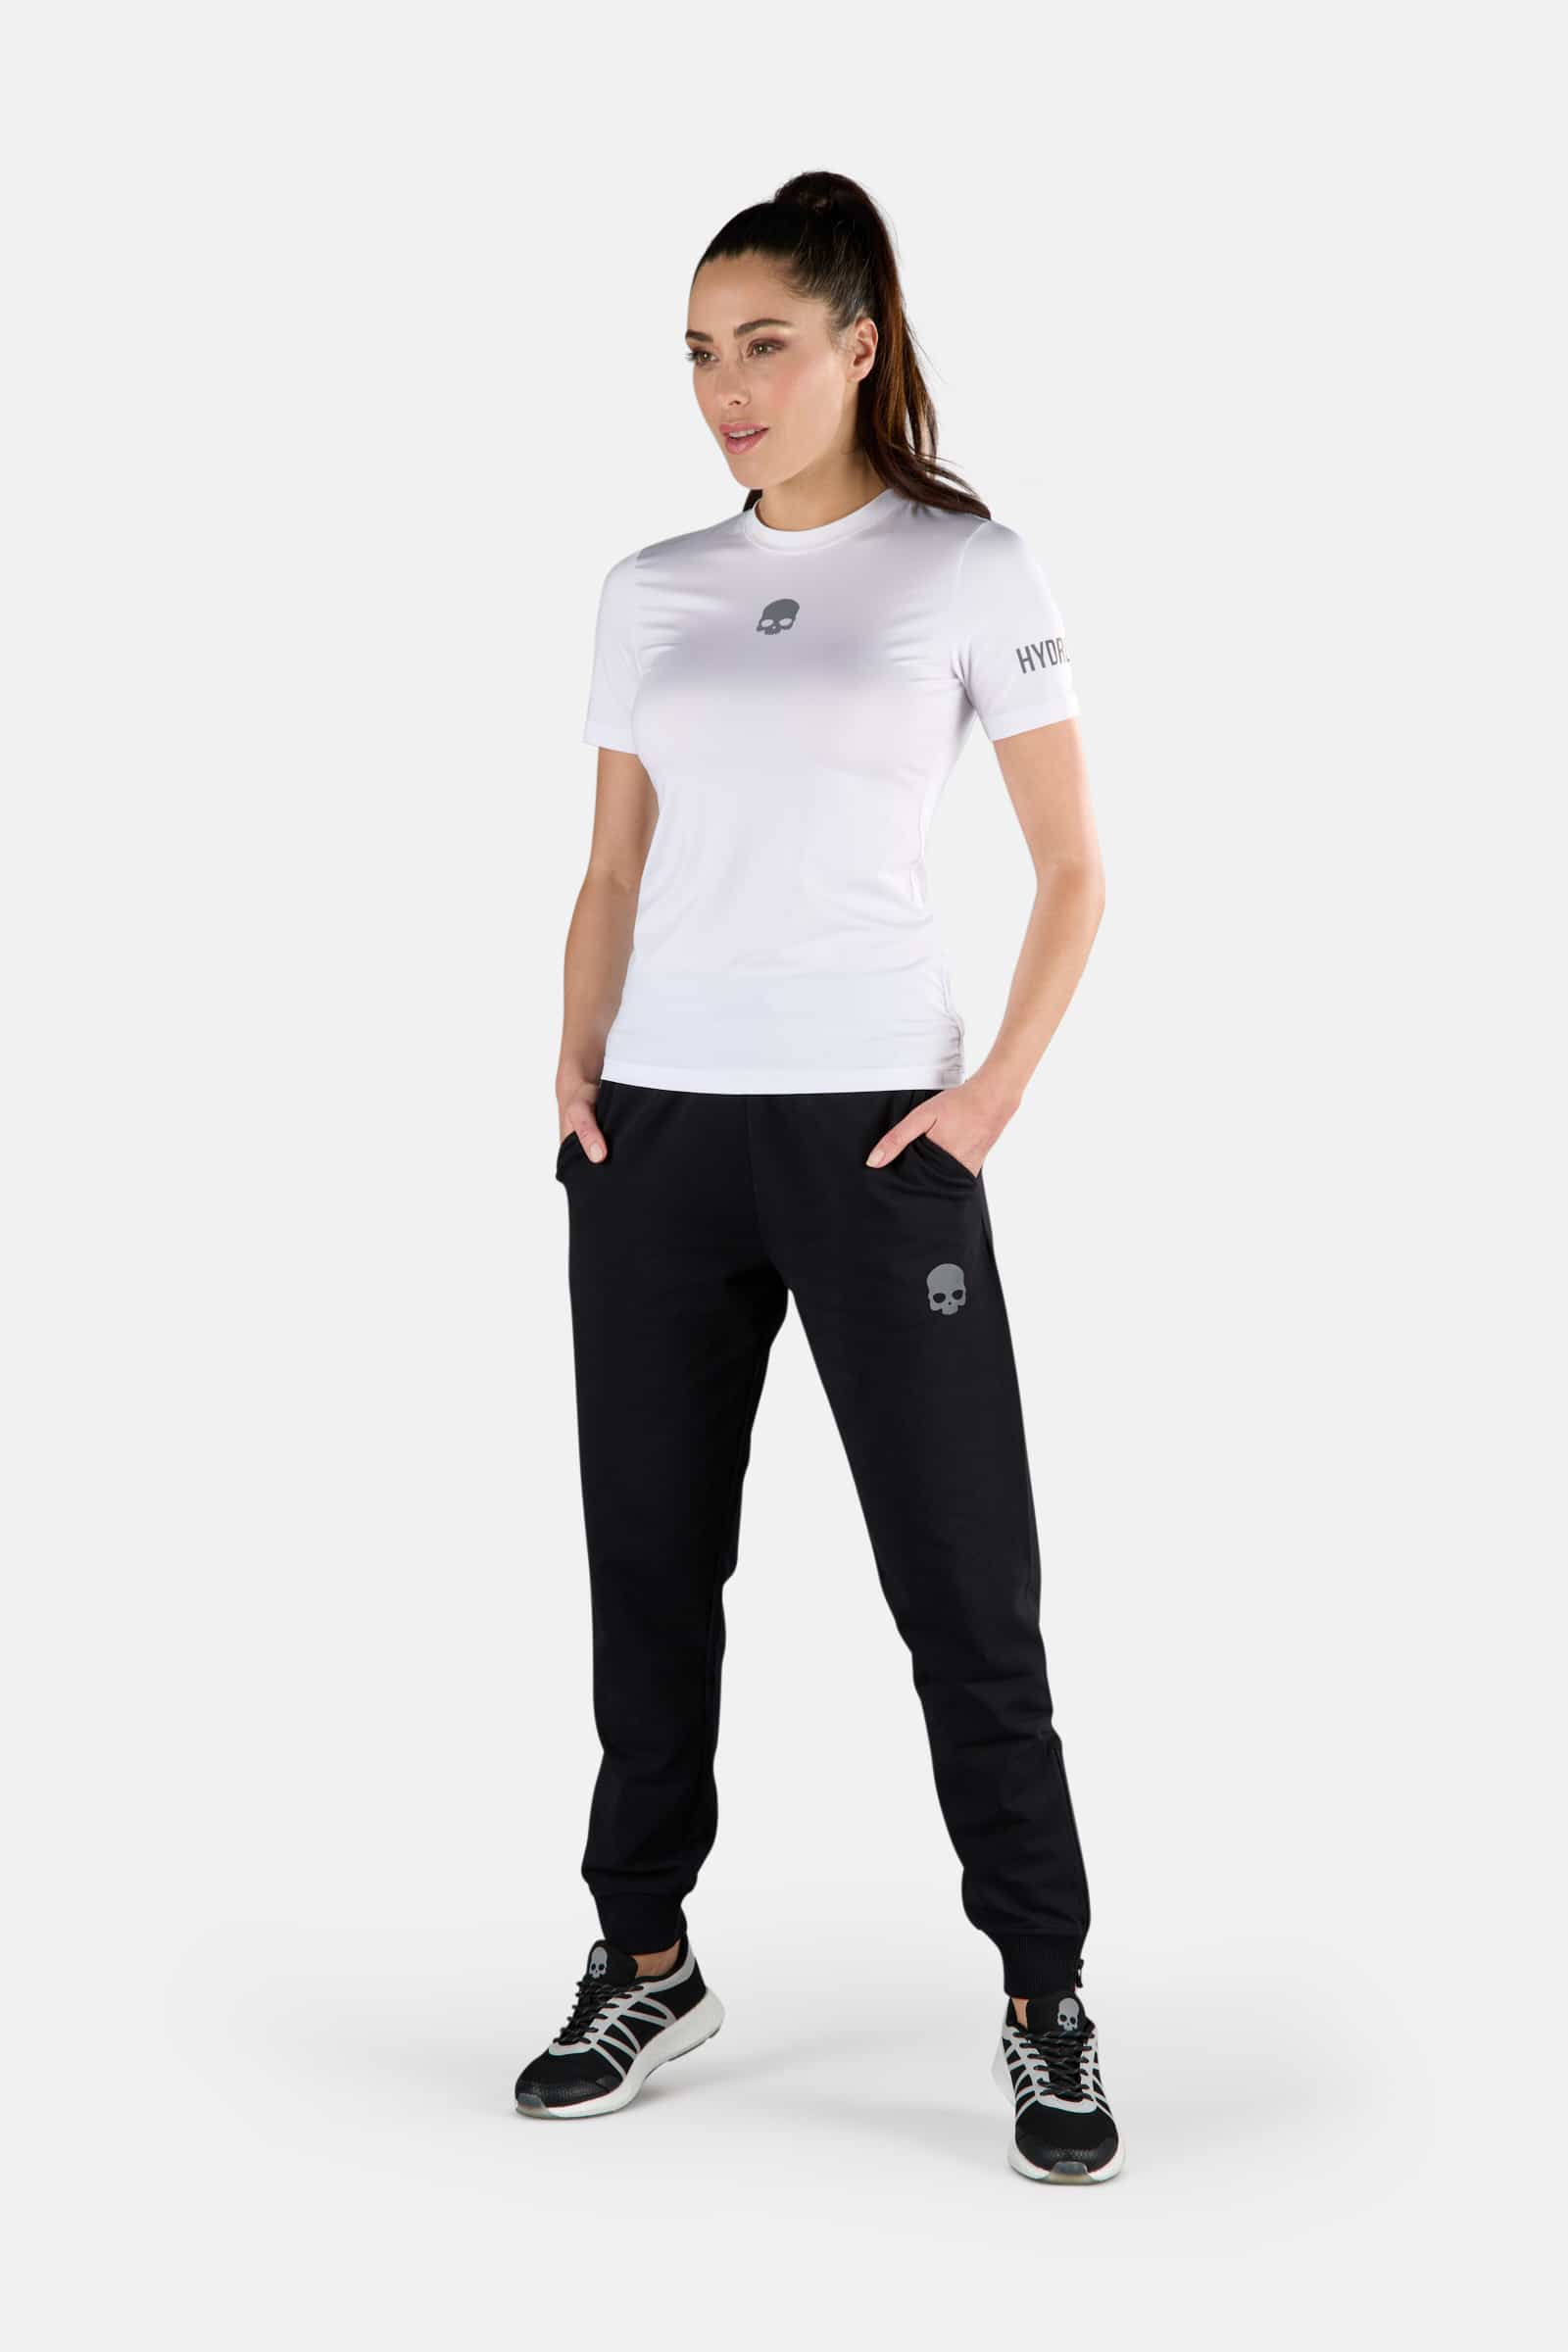 TECH TEE - WHITE - Abbigliamento sportivo | Hydrogen